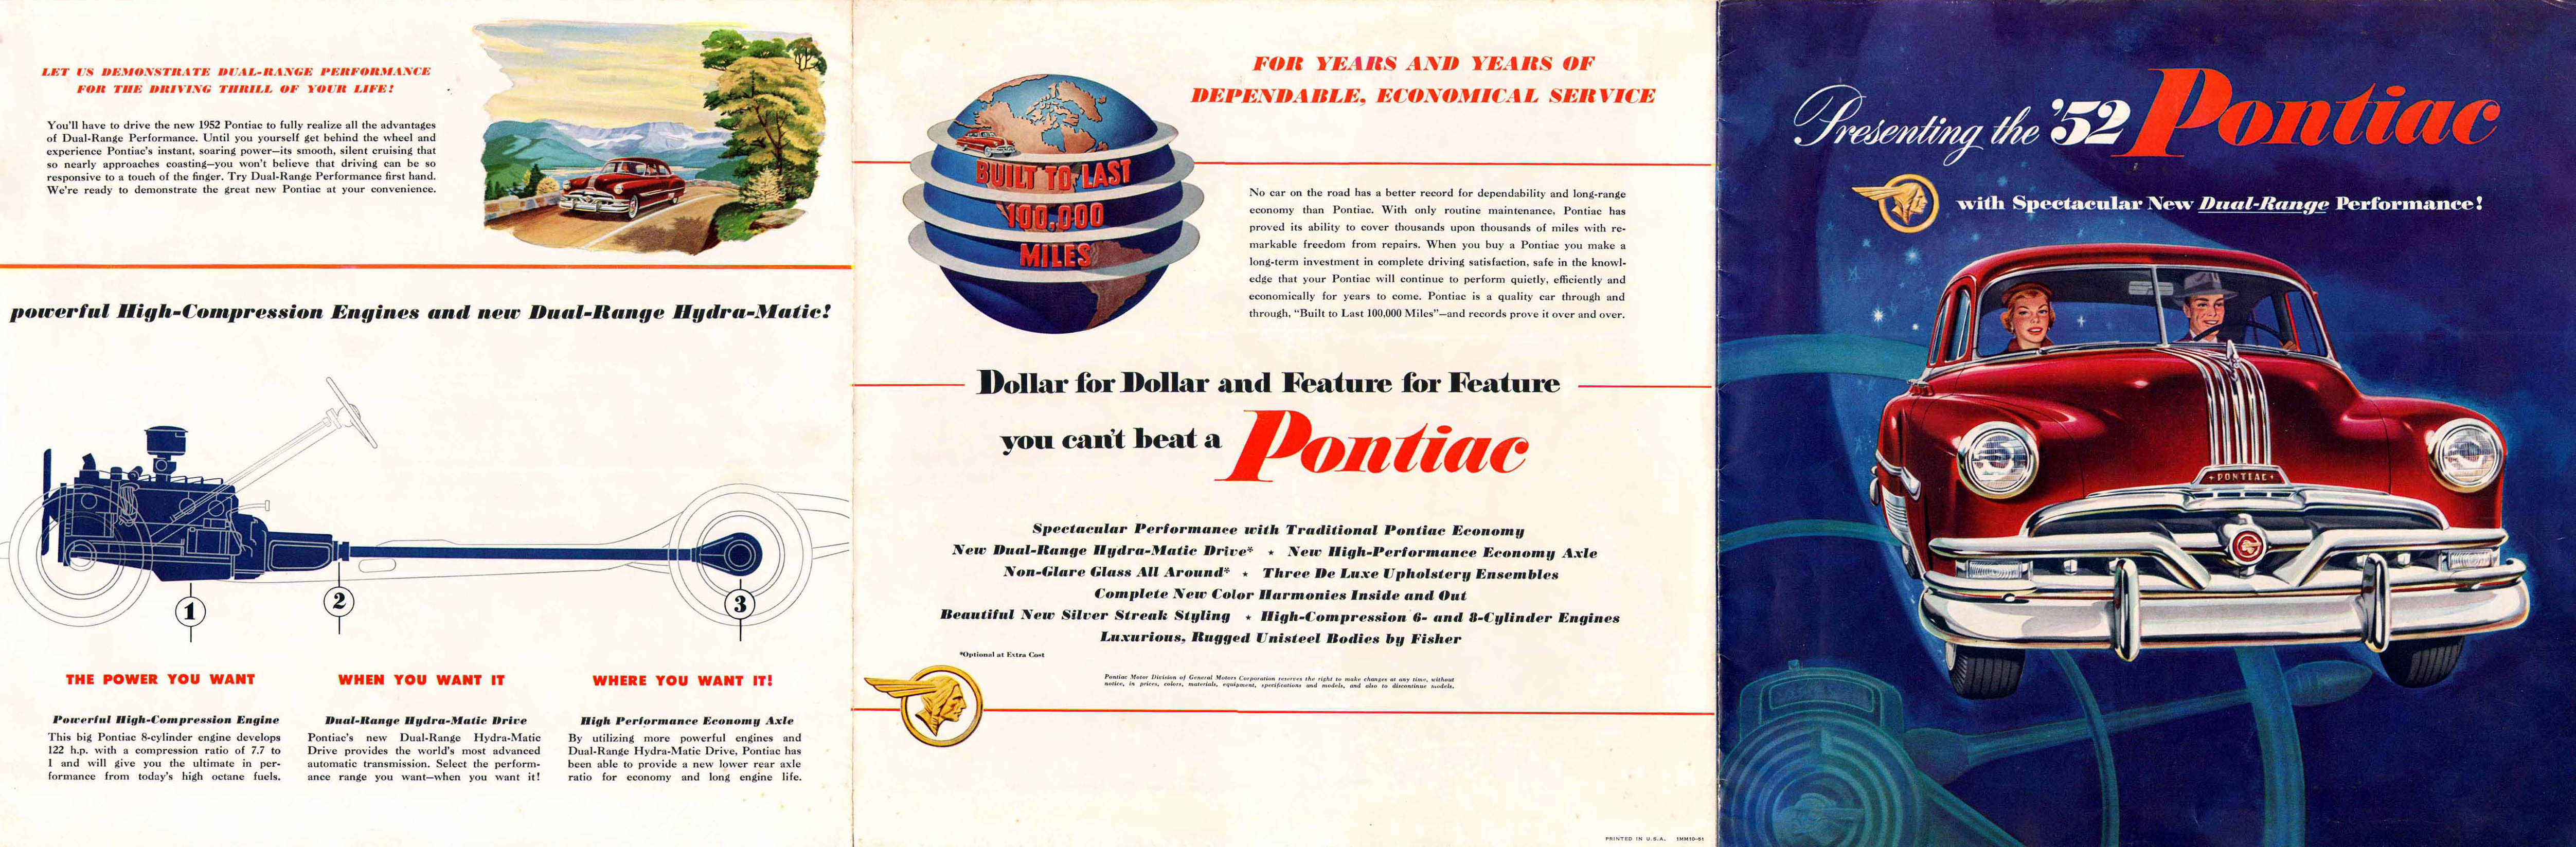 1952_Pontiac_Foldout-01-02-03